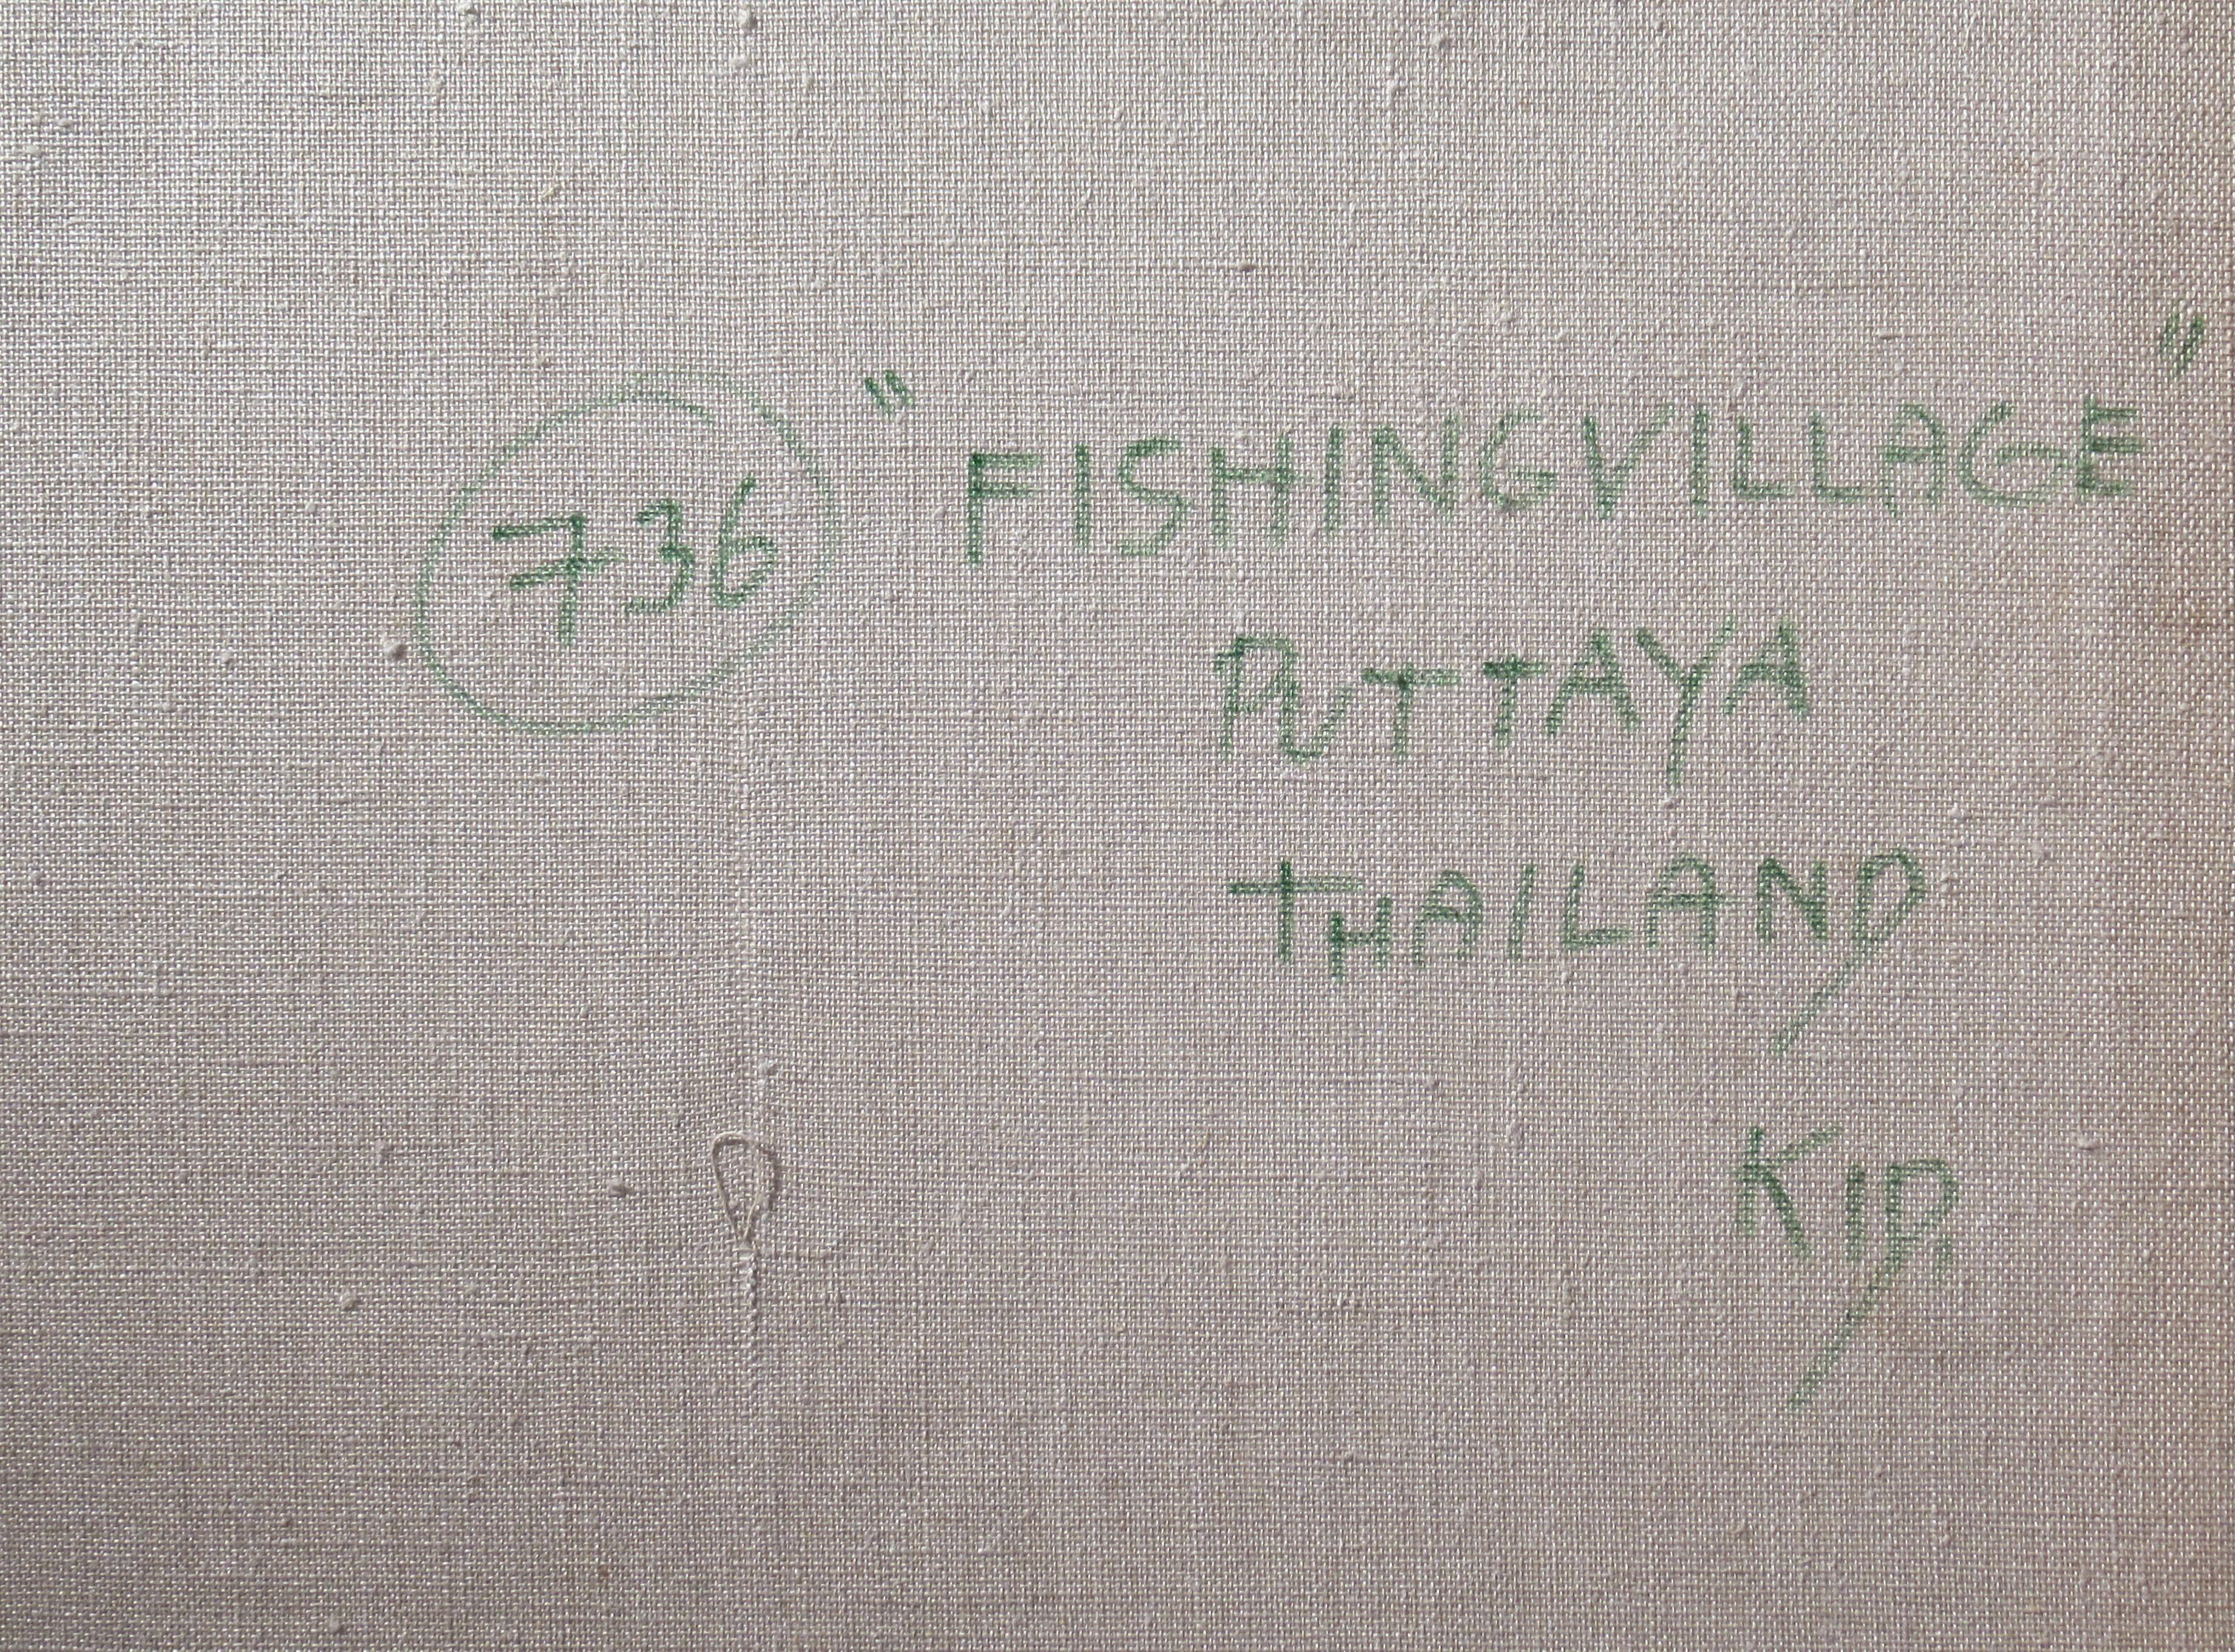 Fishing Village, Puttaya, Thailand For Sale 3